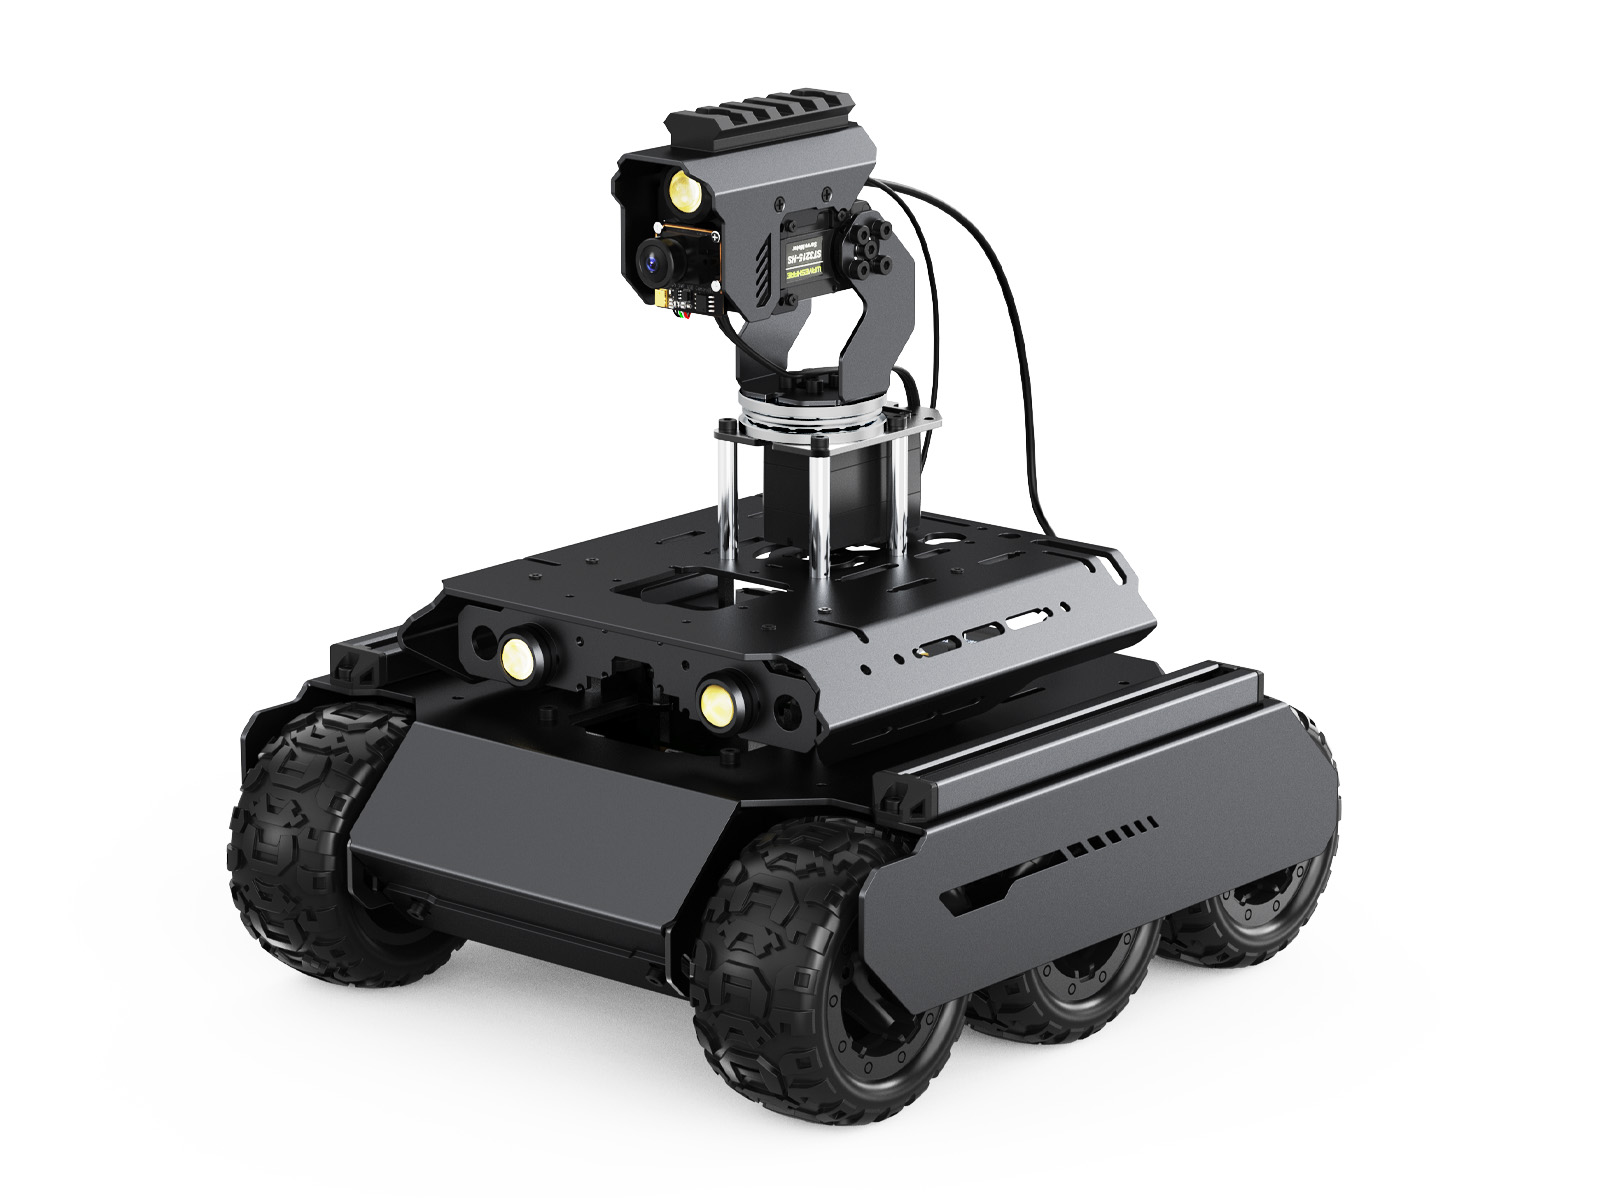 UGV Rover四驱六轮开源移动机器人 双脑架构 机器视觉 交互式教程 高性能灵活可扩展 金属架构 搭载360°全向云台 适用于树莓派5